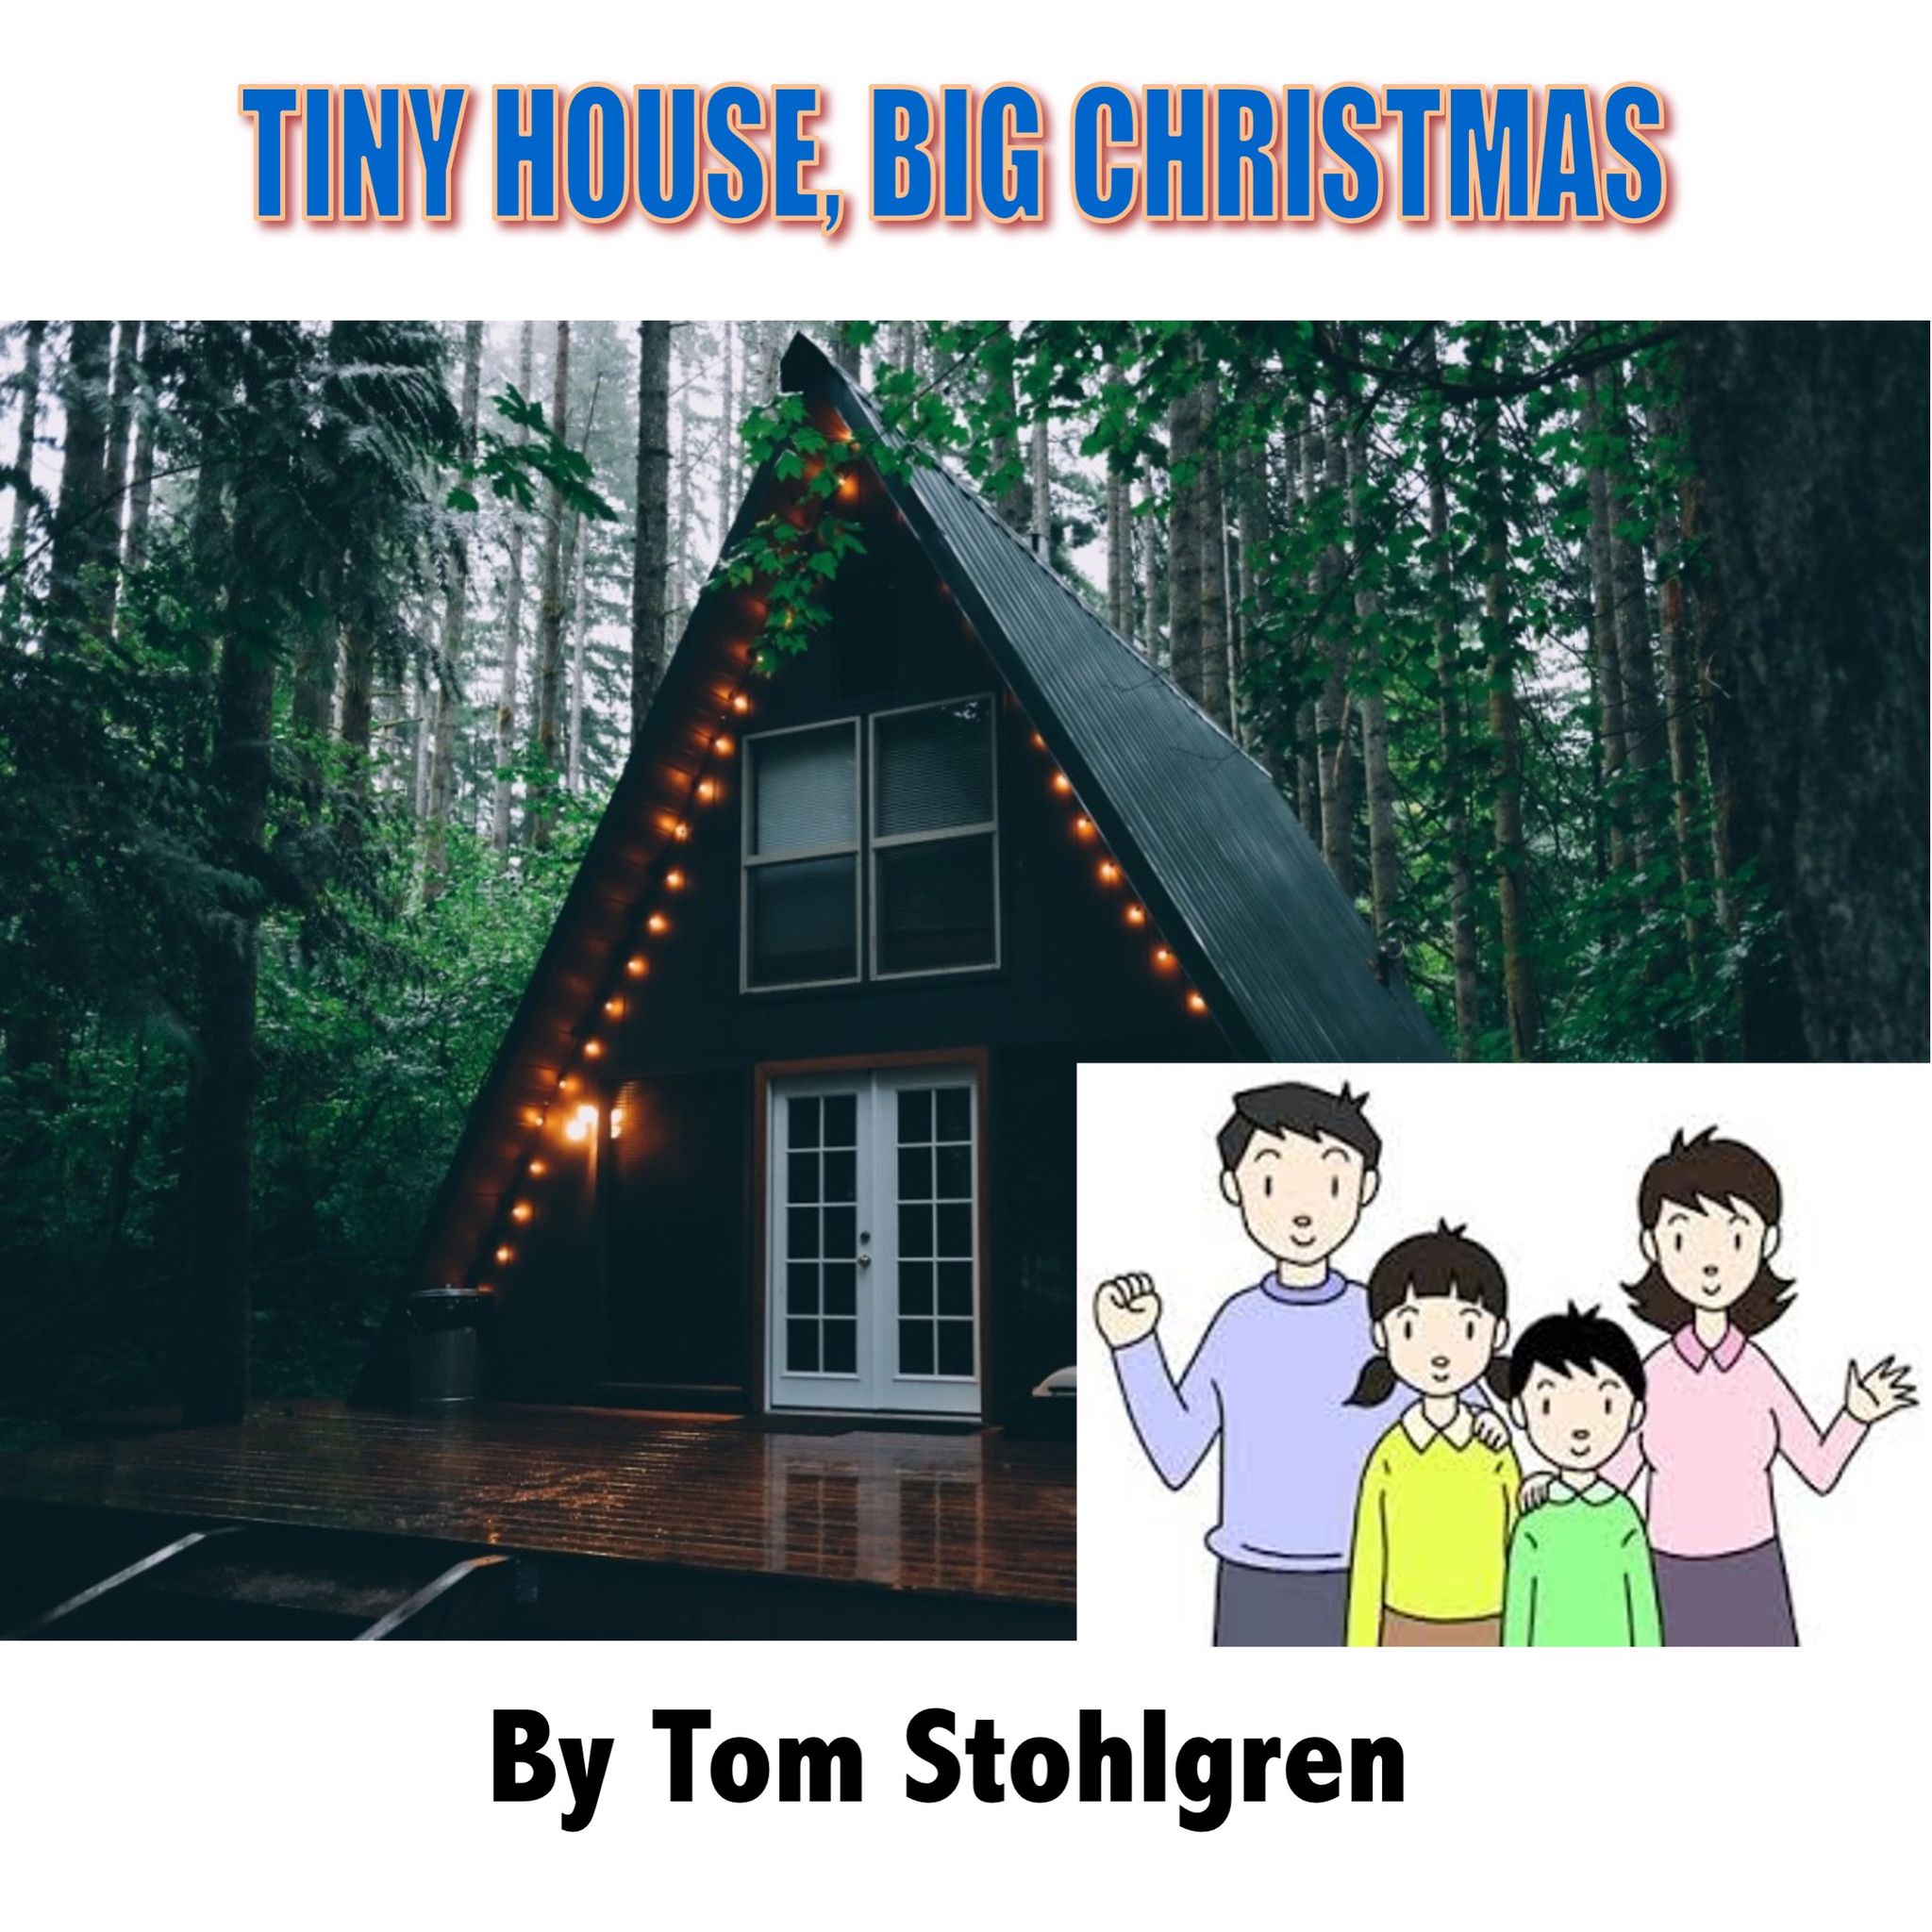 TINY HOUSE, BIG CHRISTMAS